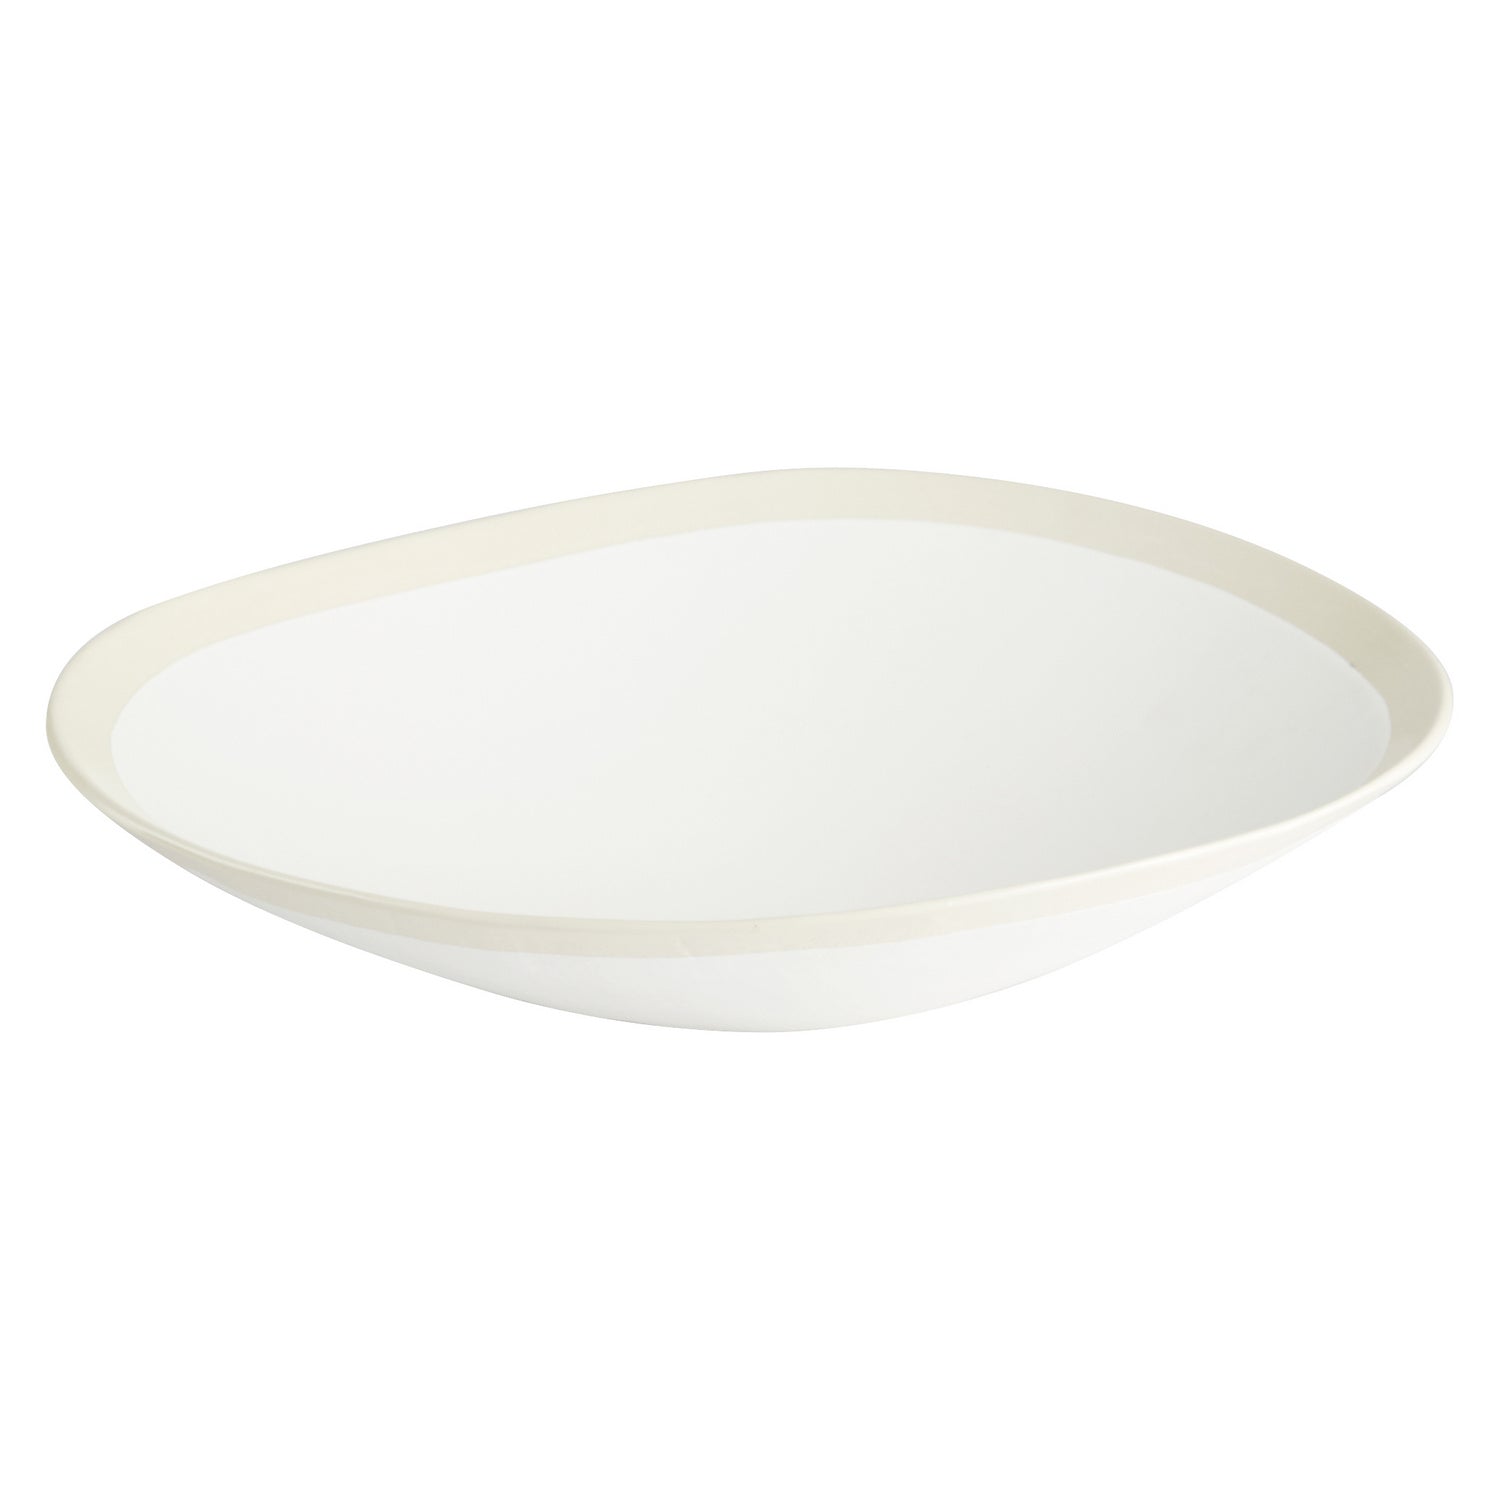 Cyan 11213 Bowls & Plates - White